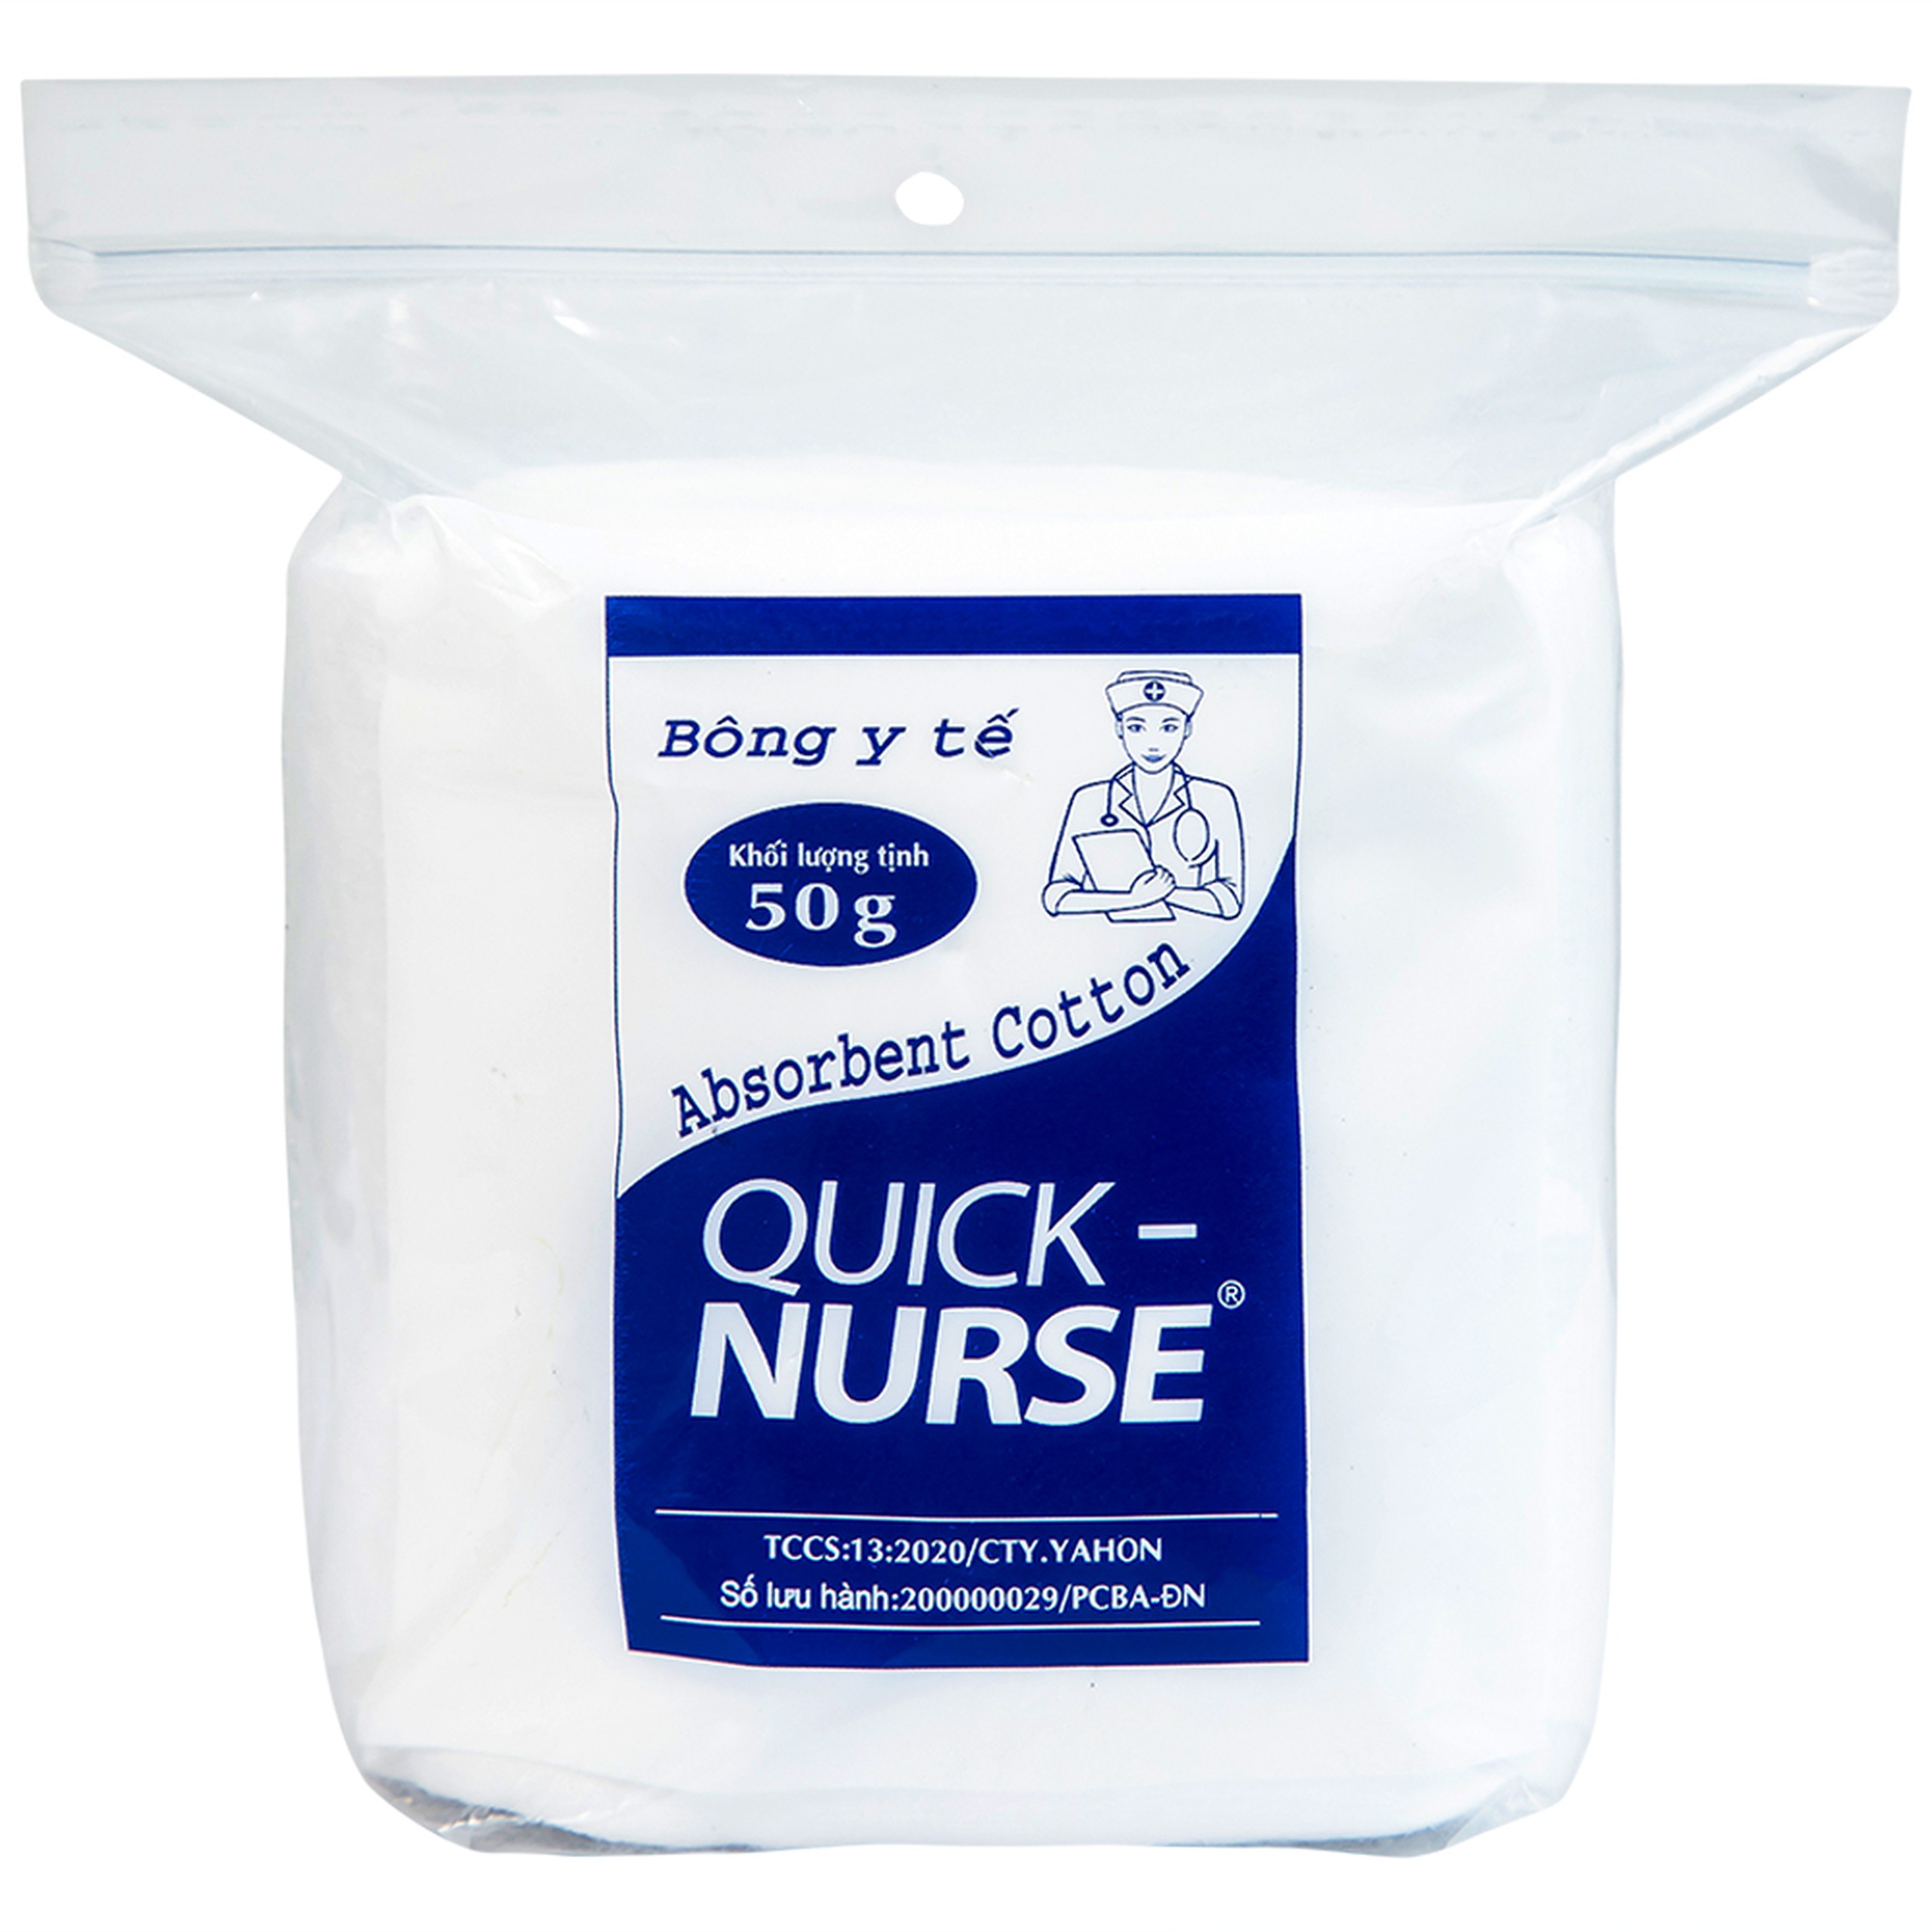 Bông y tế Quick Nurse 50g dùng cho vết thương ngoài da, sát trùng, vệ sinh cho bé 